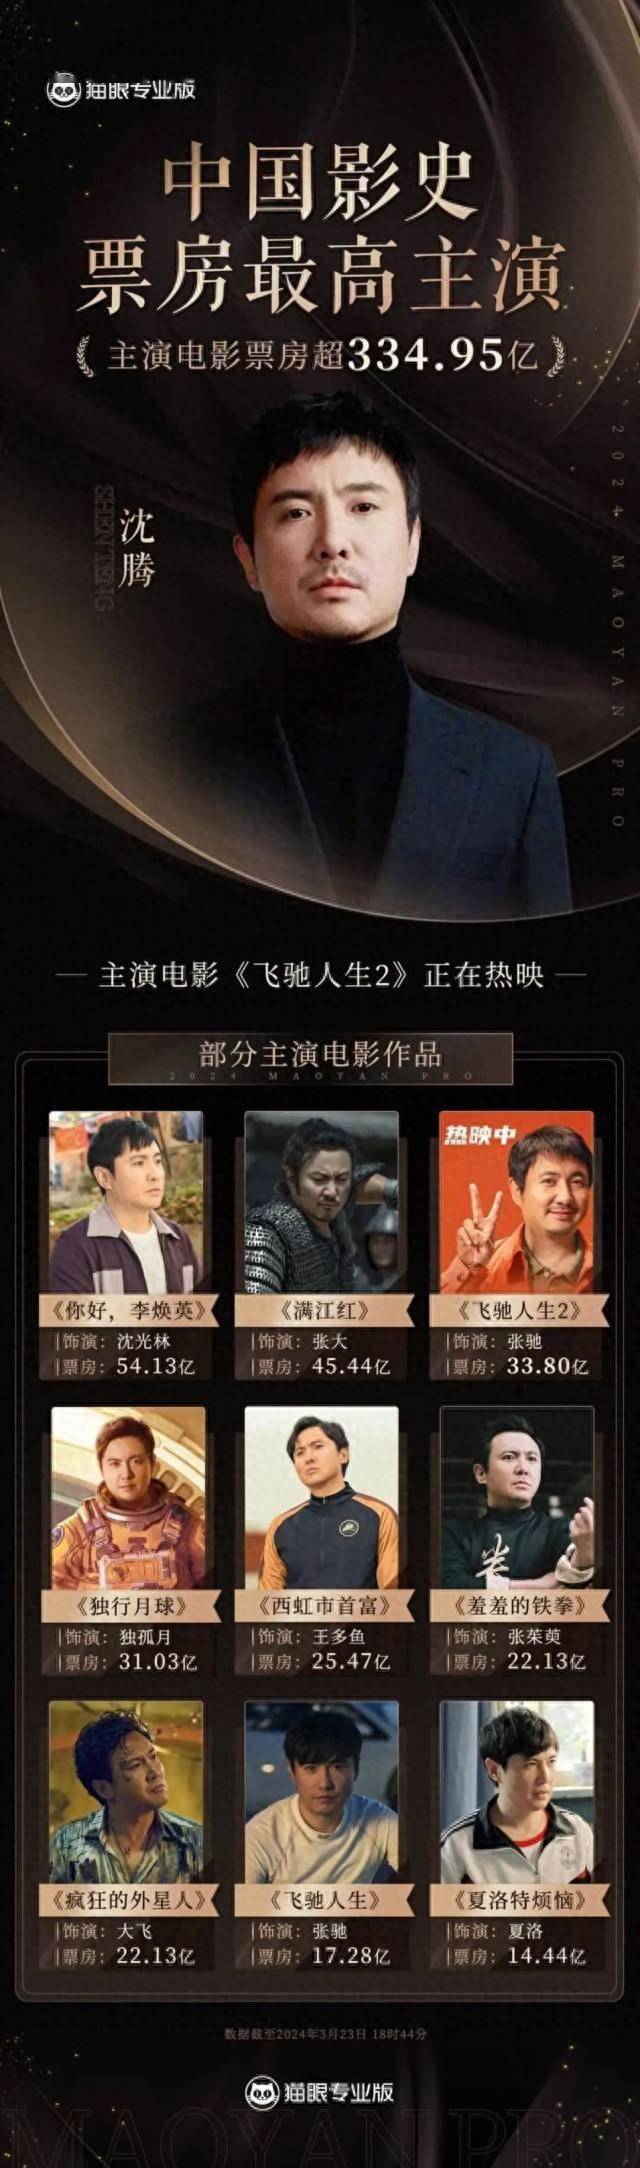 中国票房前十男演员图片